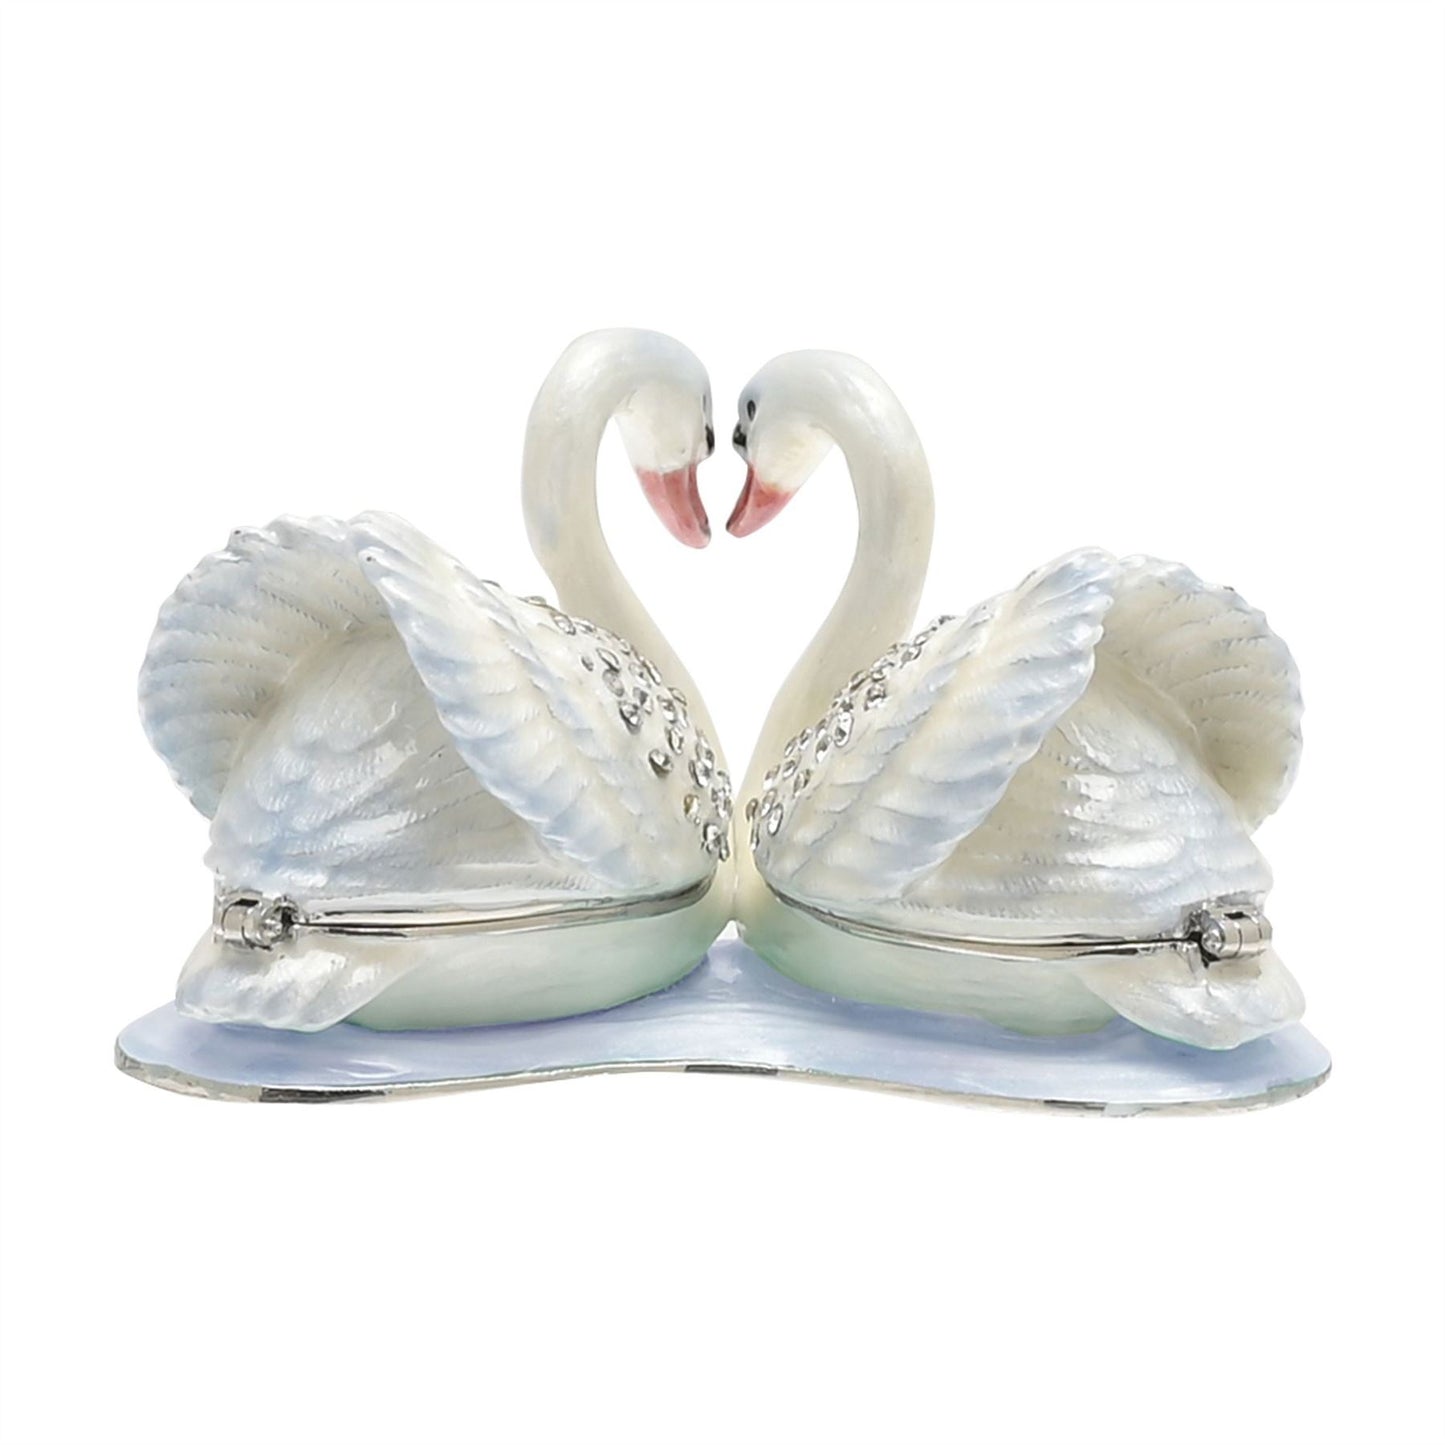 Treasured Trinkets - Pair of Swans